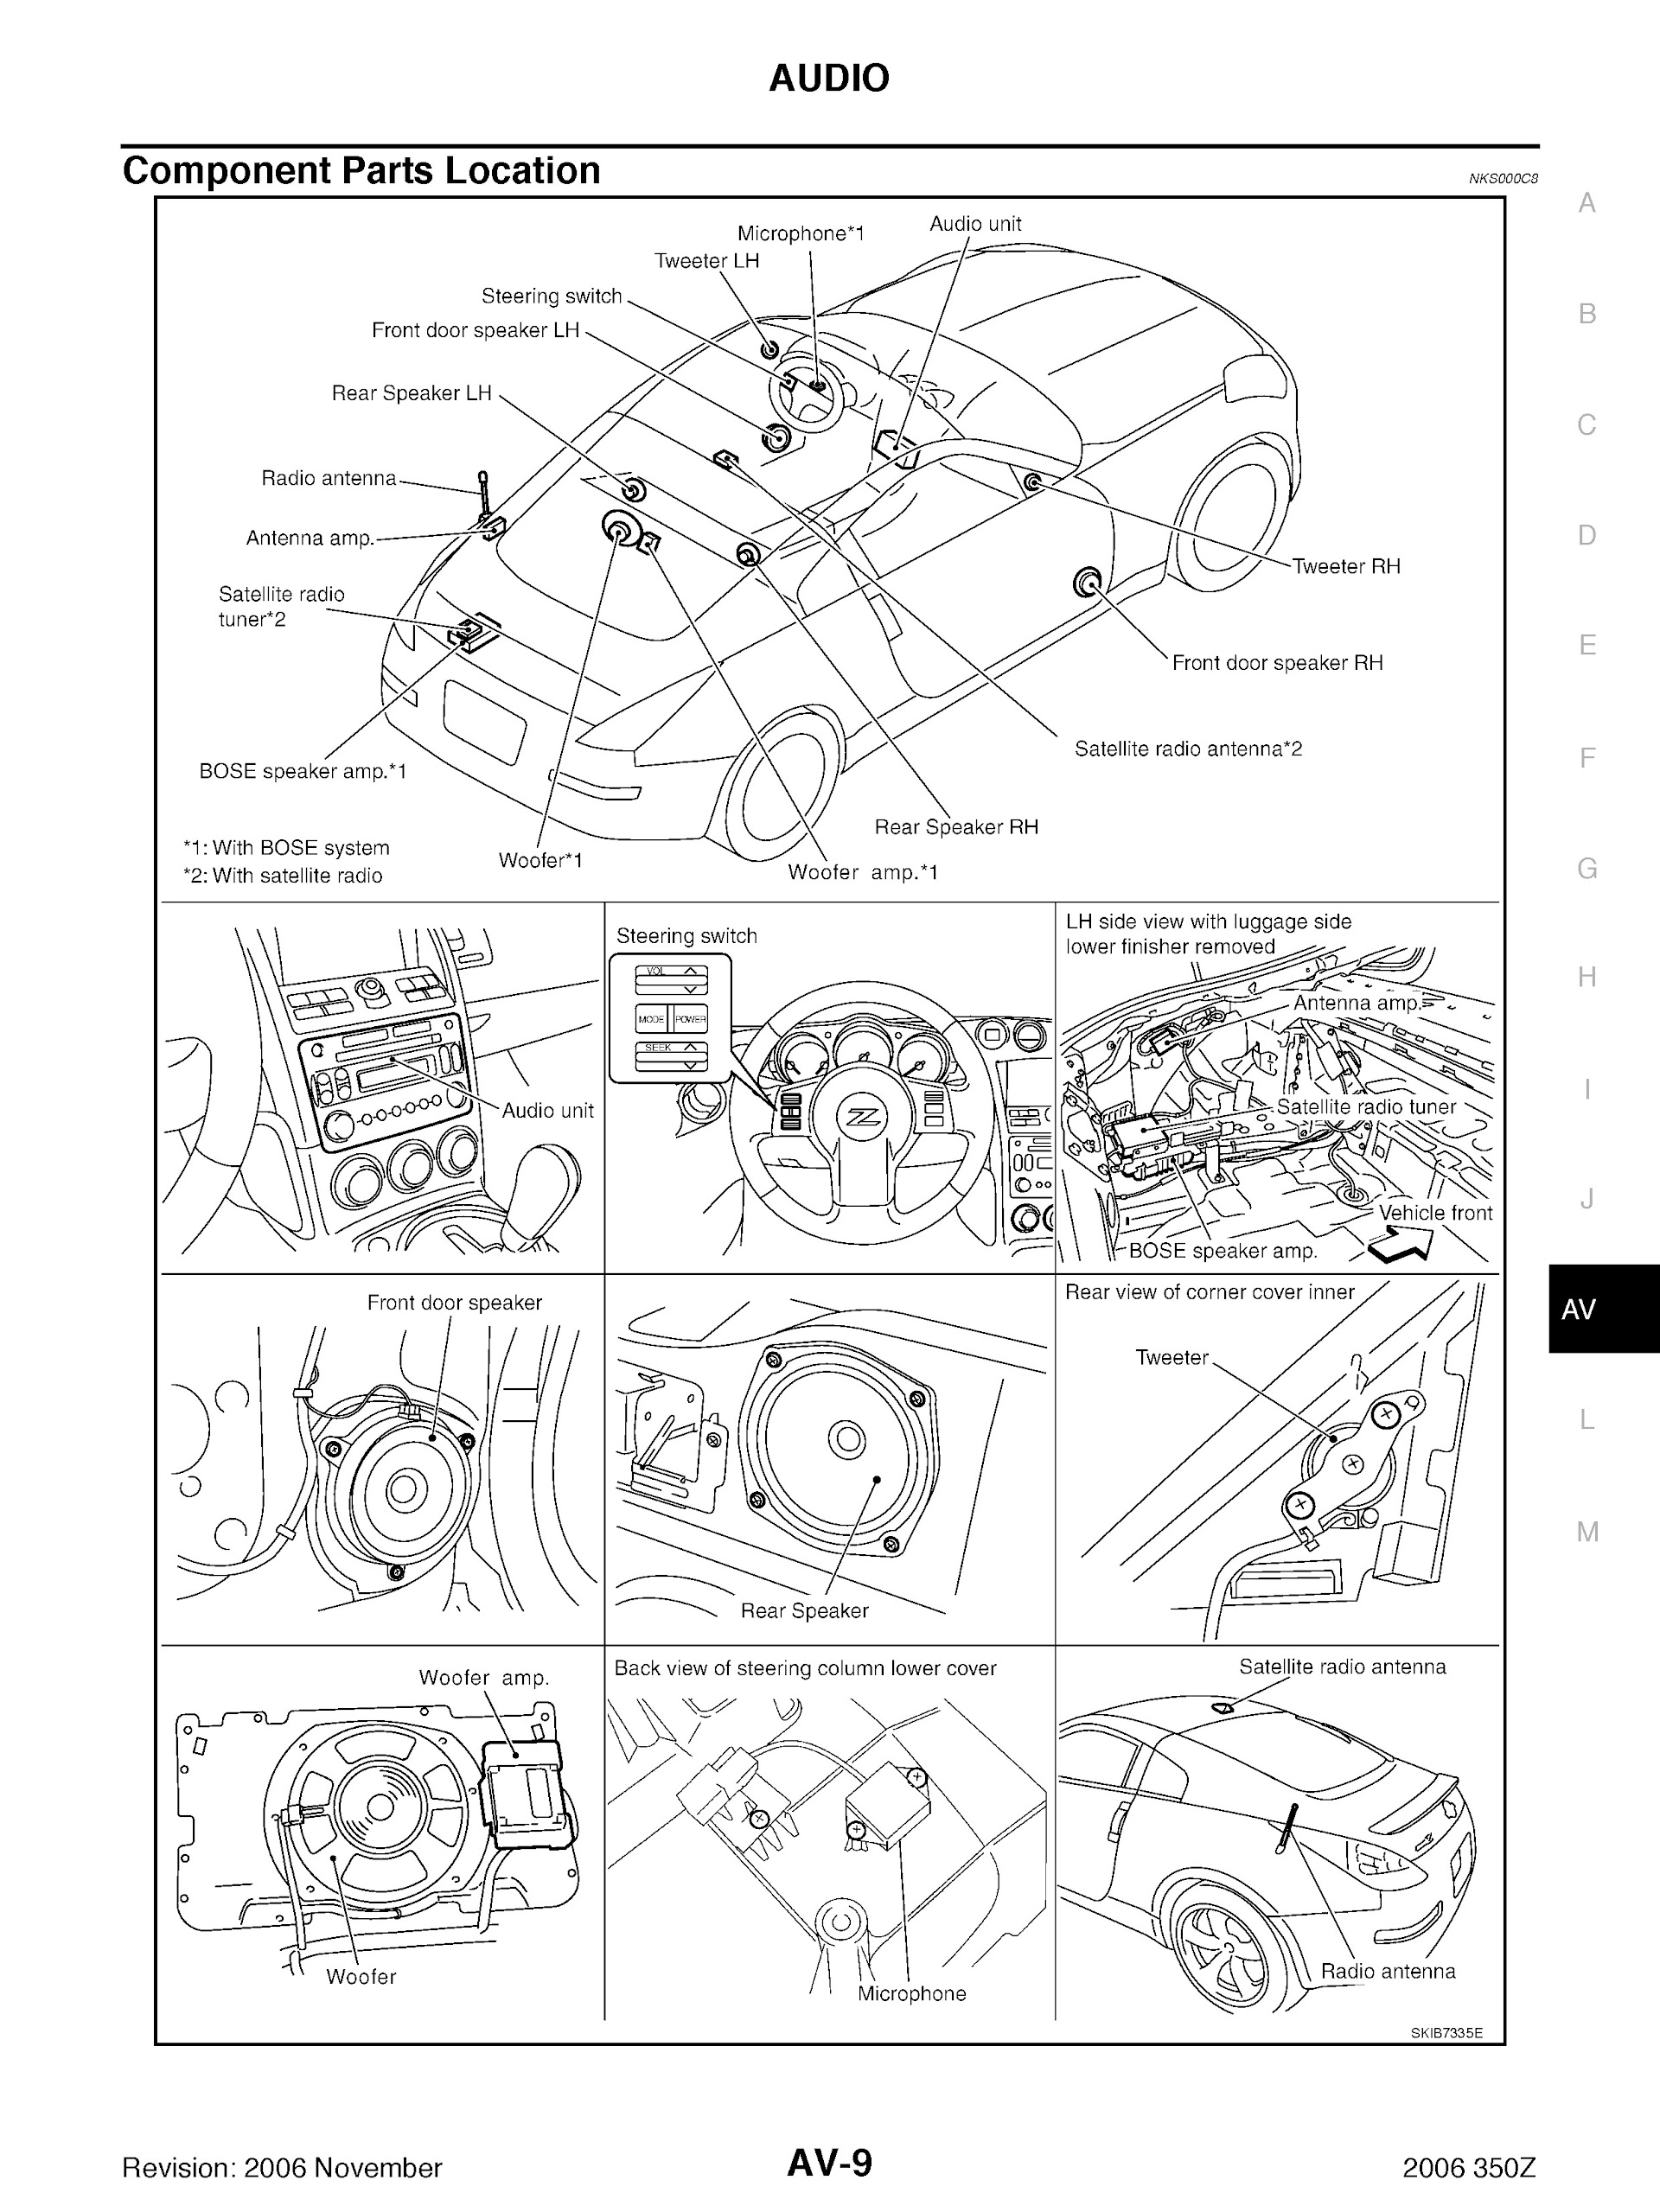 2005-2006 Nissan 350Z Repair Manual, Audio System